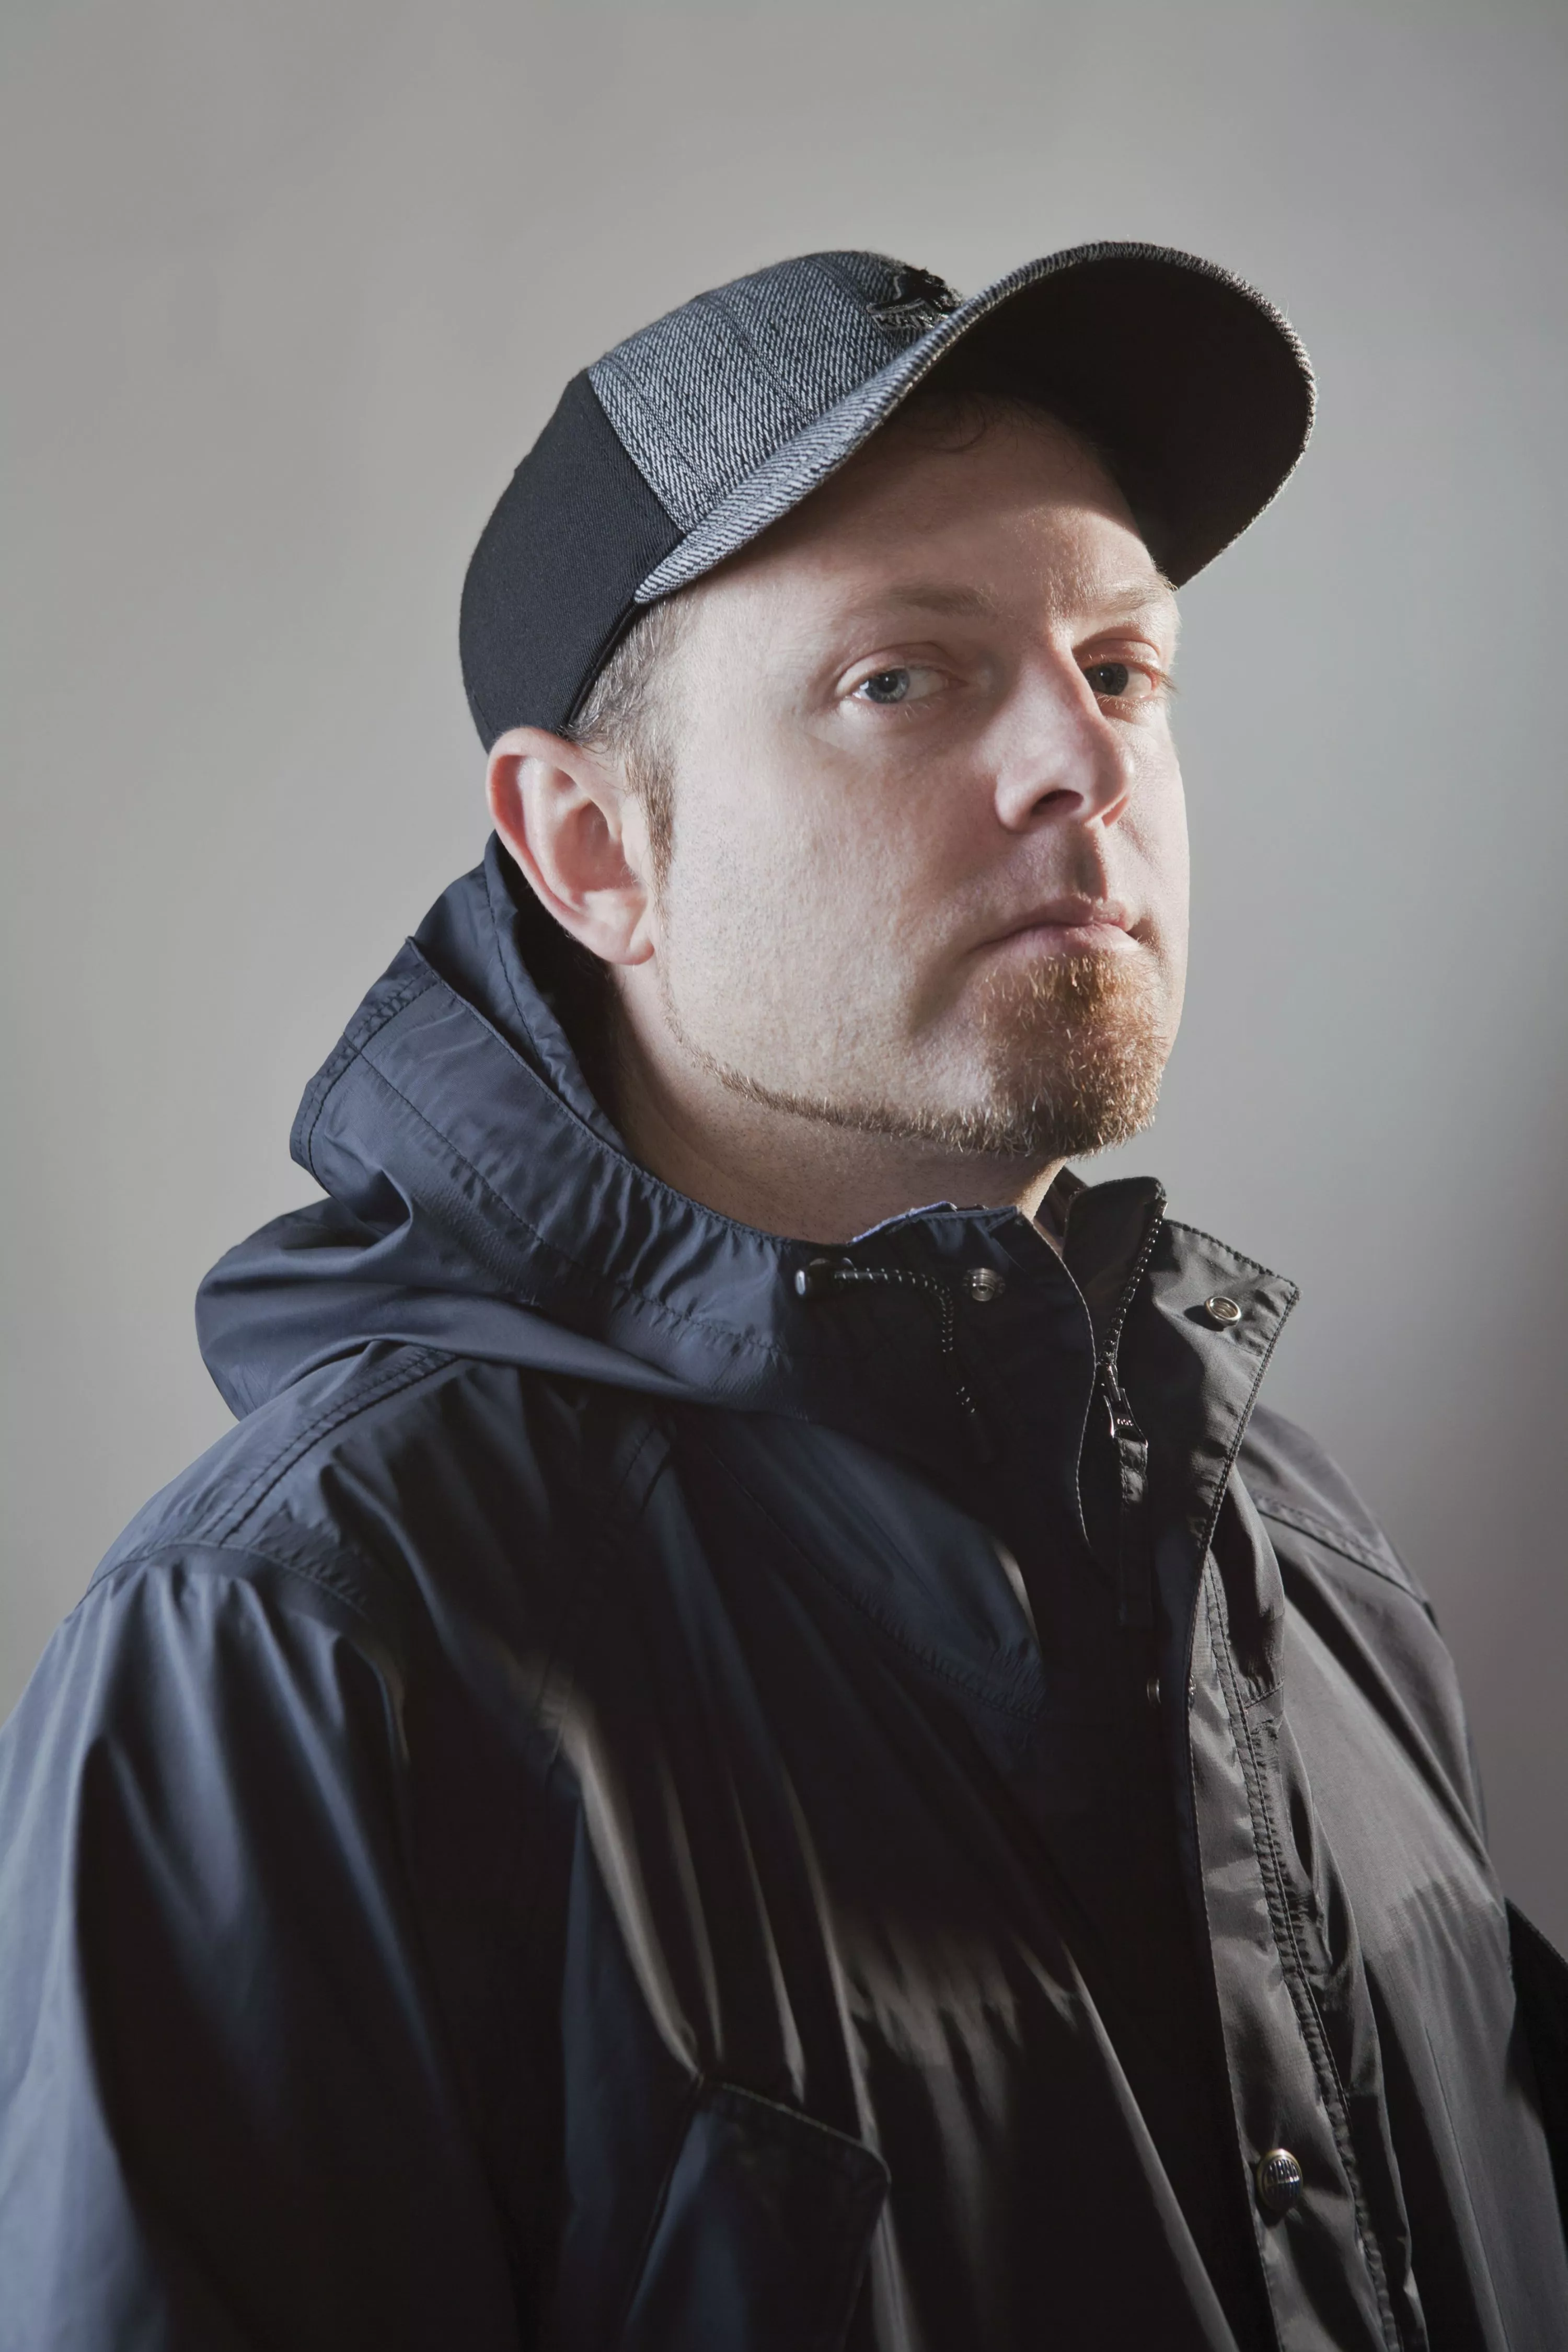 DJ Shadow: Det er trist at skulle gå i kødkjoler for at få opmærksomhed